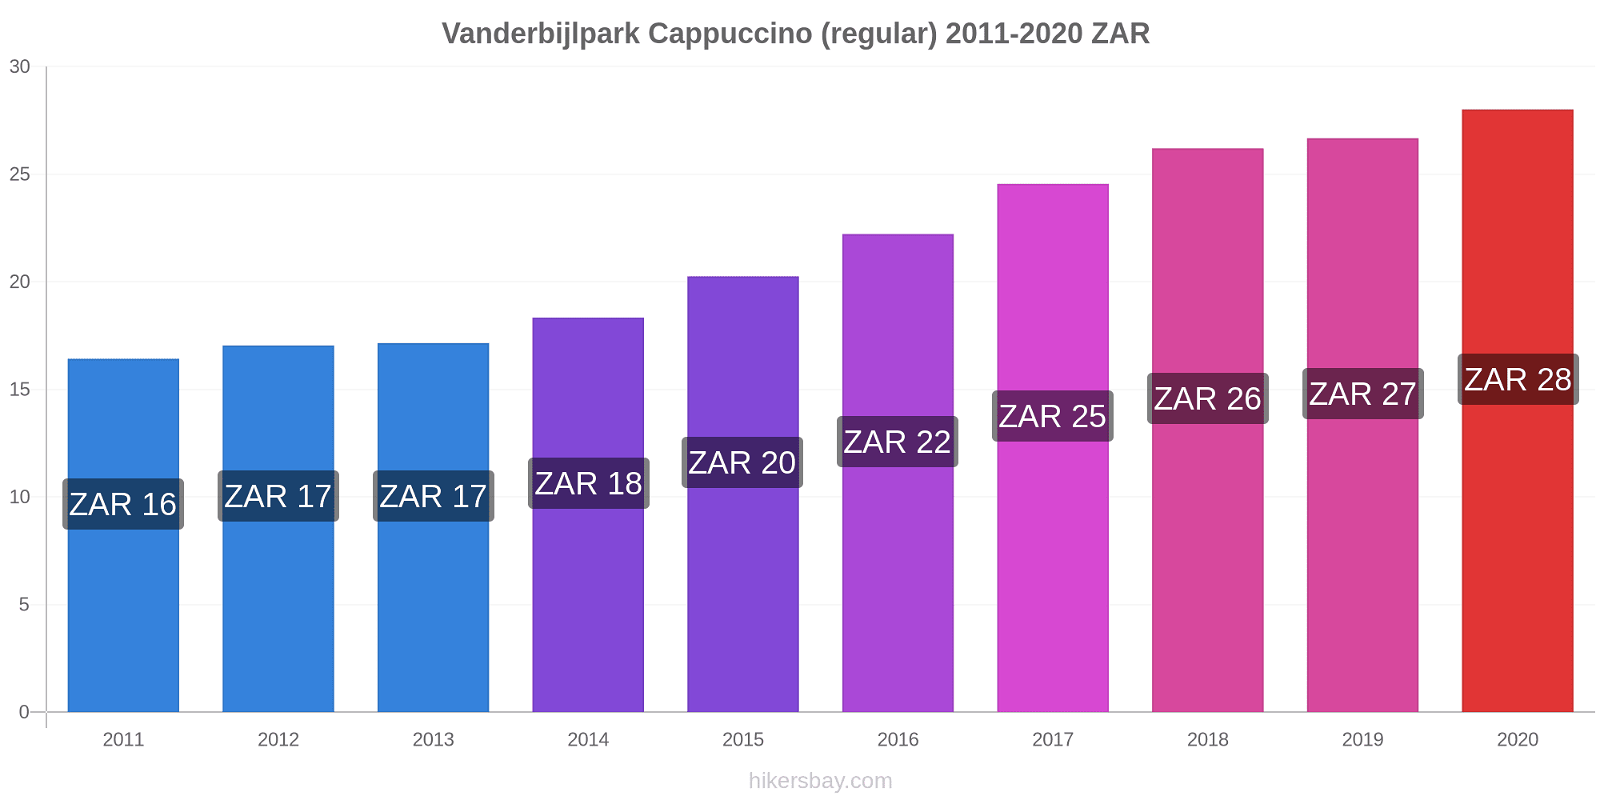 Vanderbijlpark price changes Cappuccino (regular) hikersbay.com